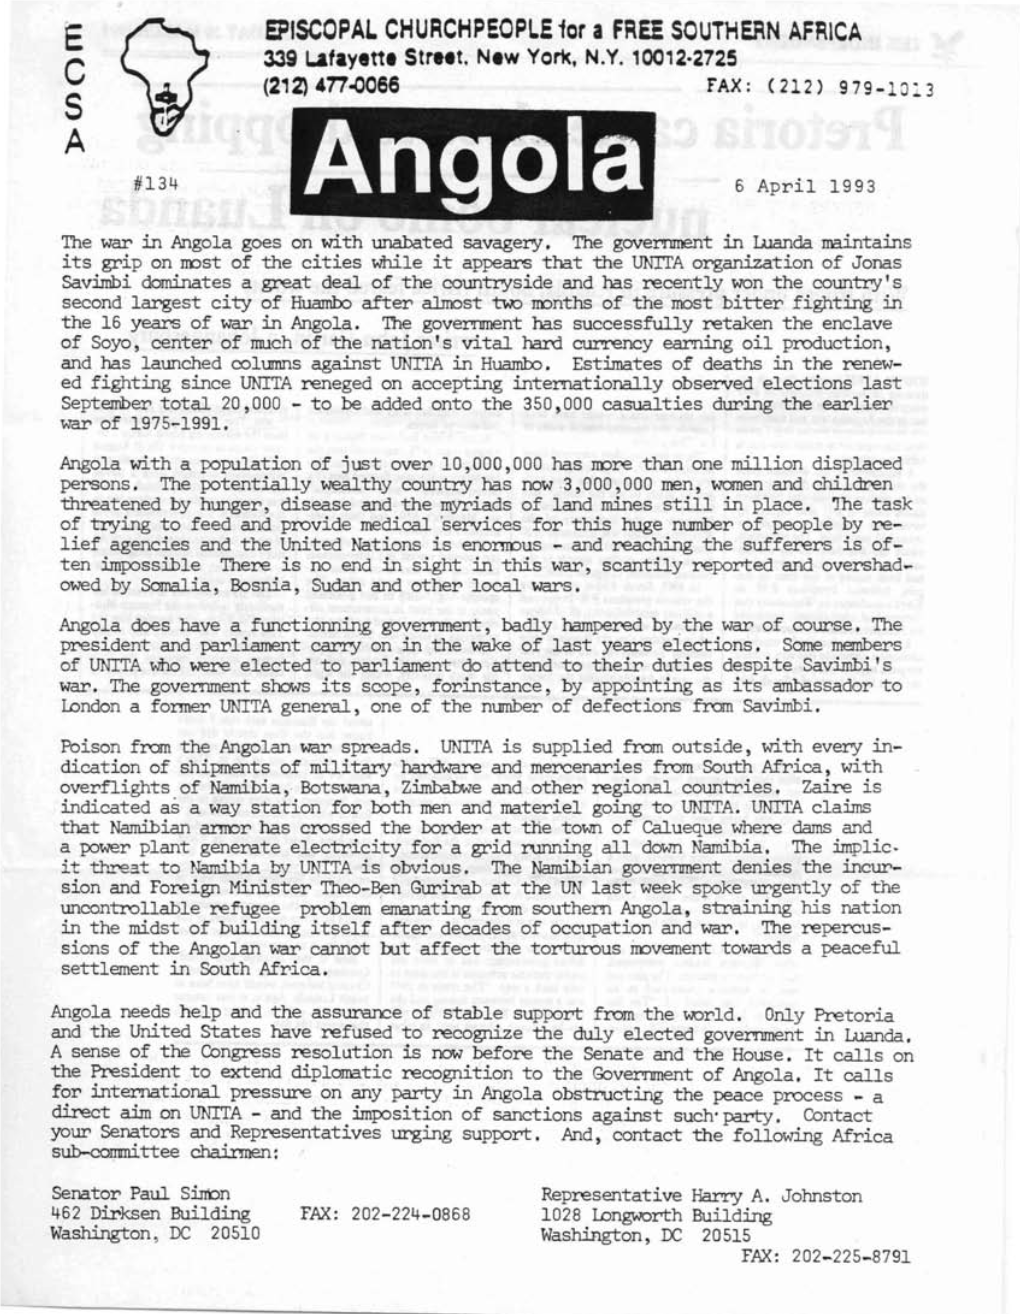 417..Qoee FAX: (21 2) 9 79-1 0 ~ 3 S a #134 Angola 6 April 1993